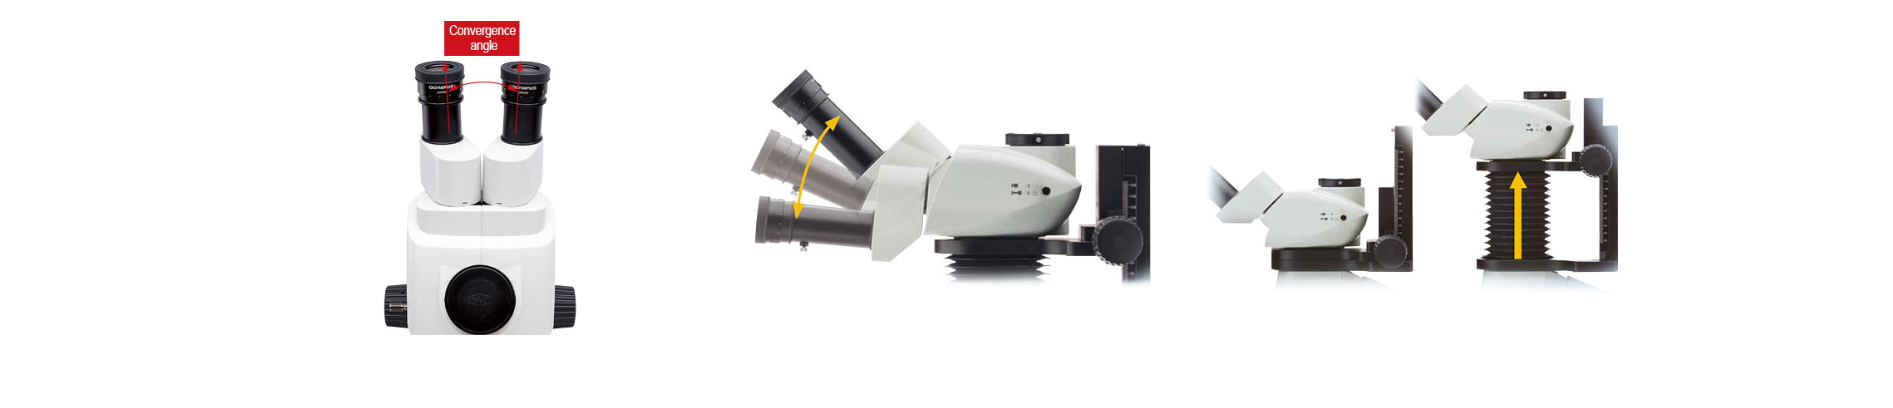 科研级体式荧光显微镜(图10)